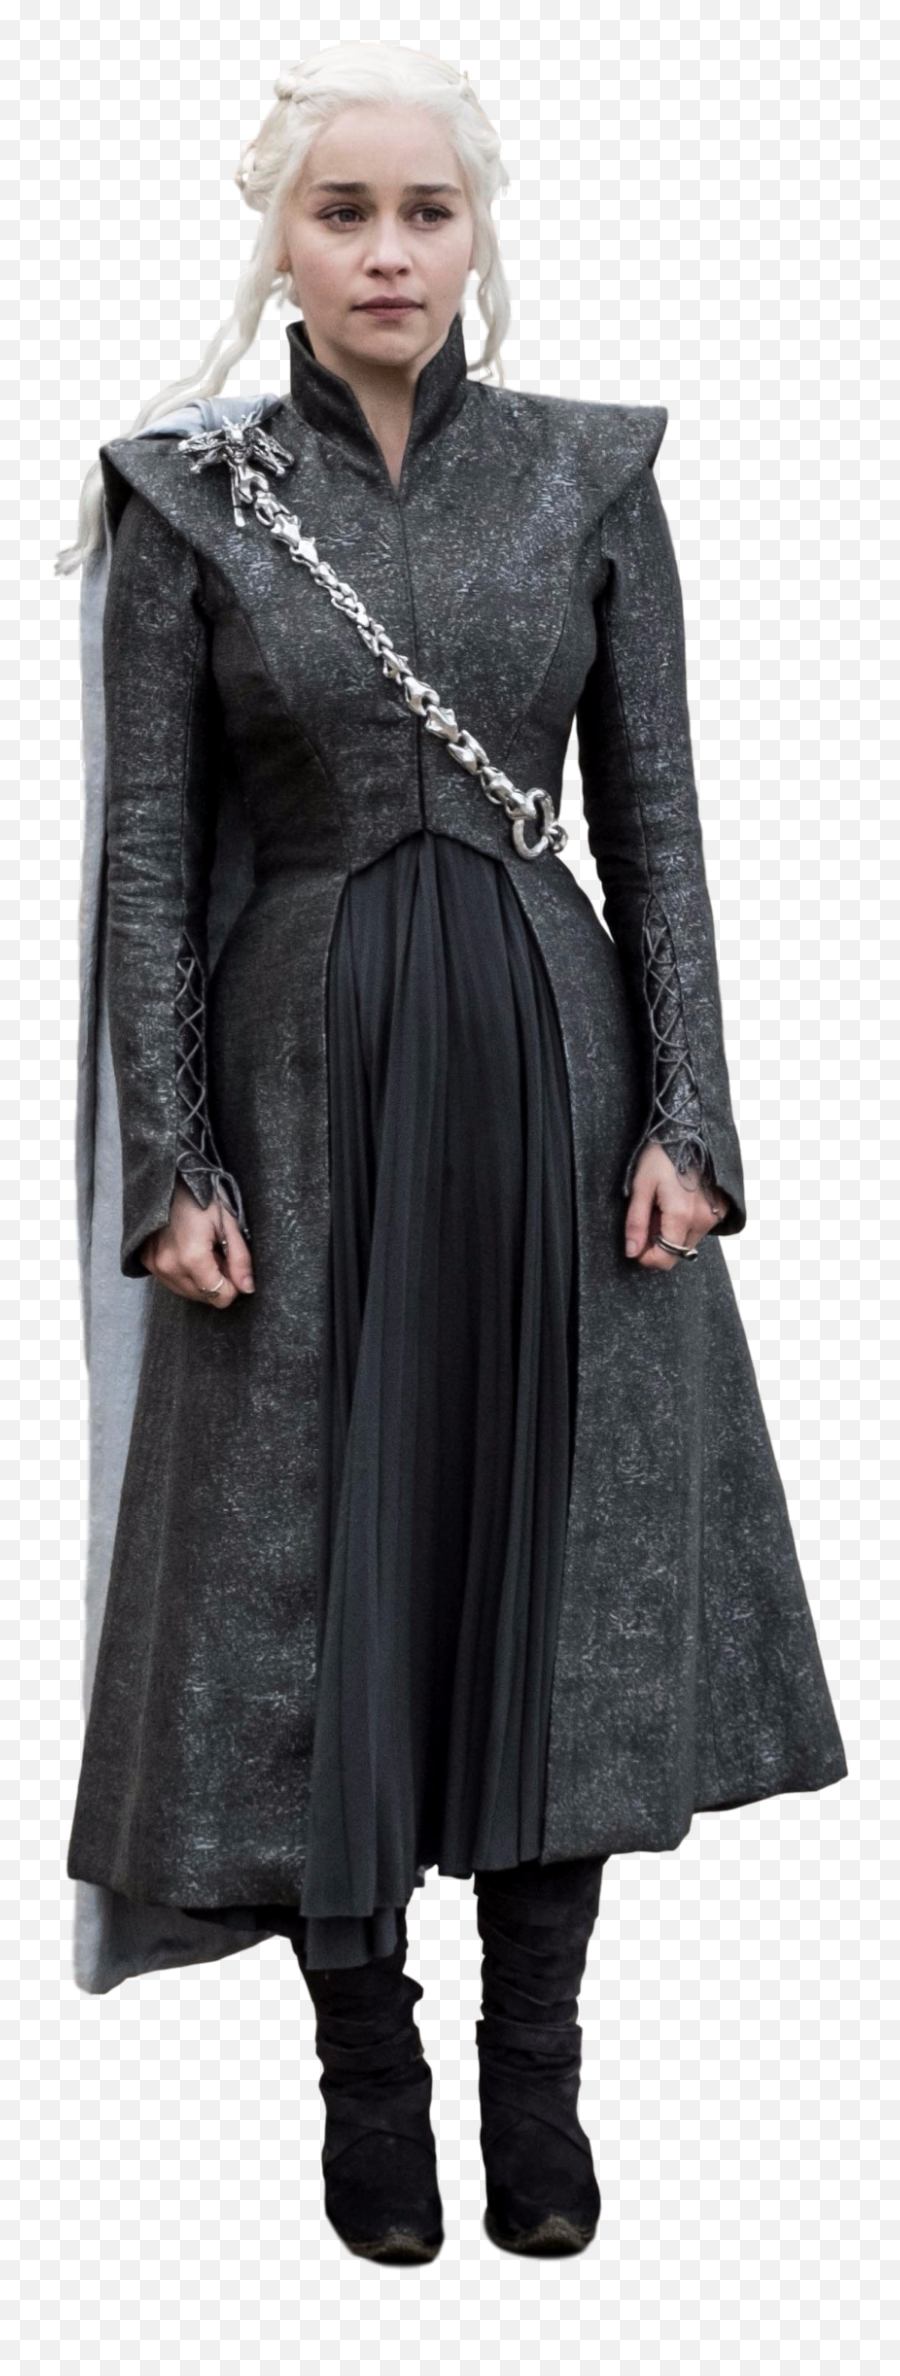 Daenerys Targaryen Png Images In - Daenerys Targaryen Season 8 Costume,Daenerys Png